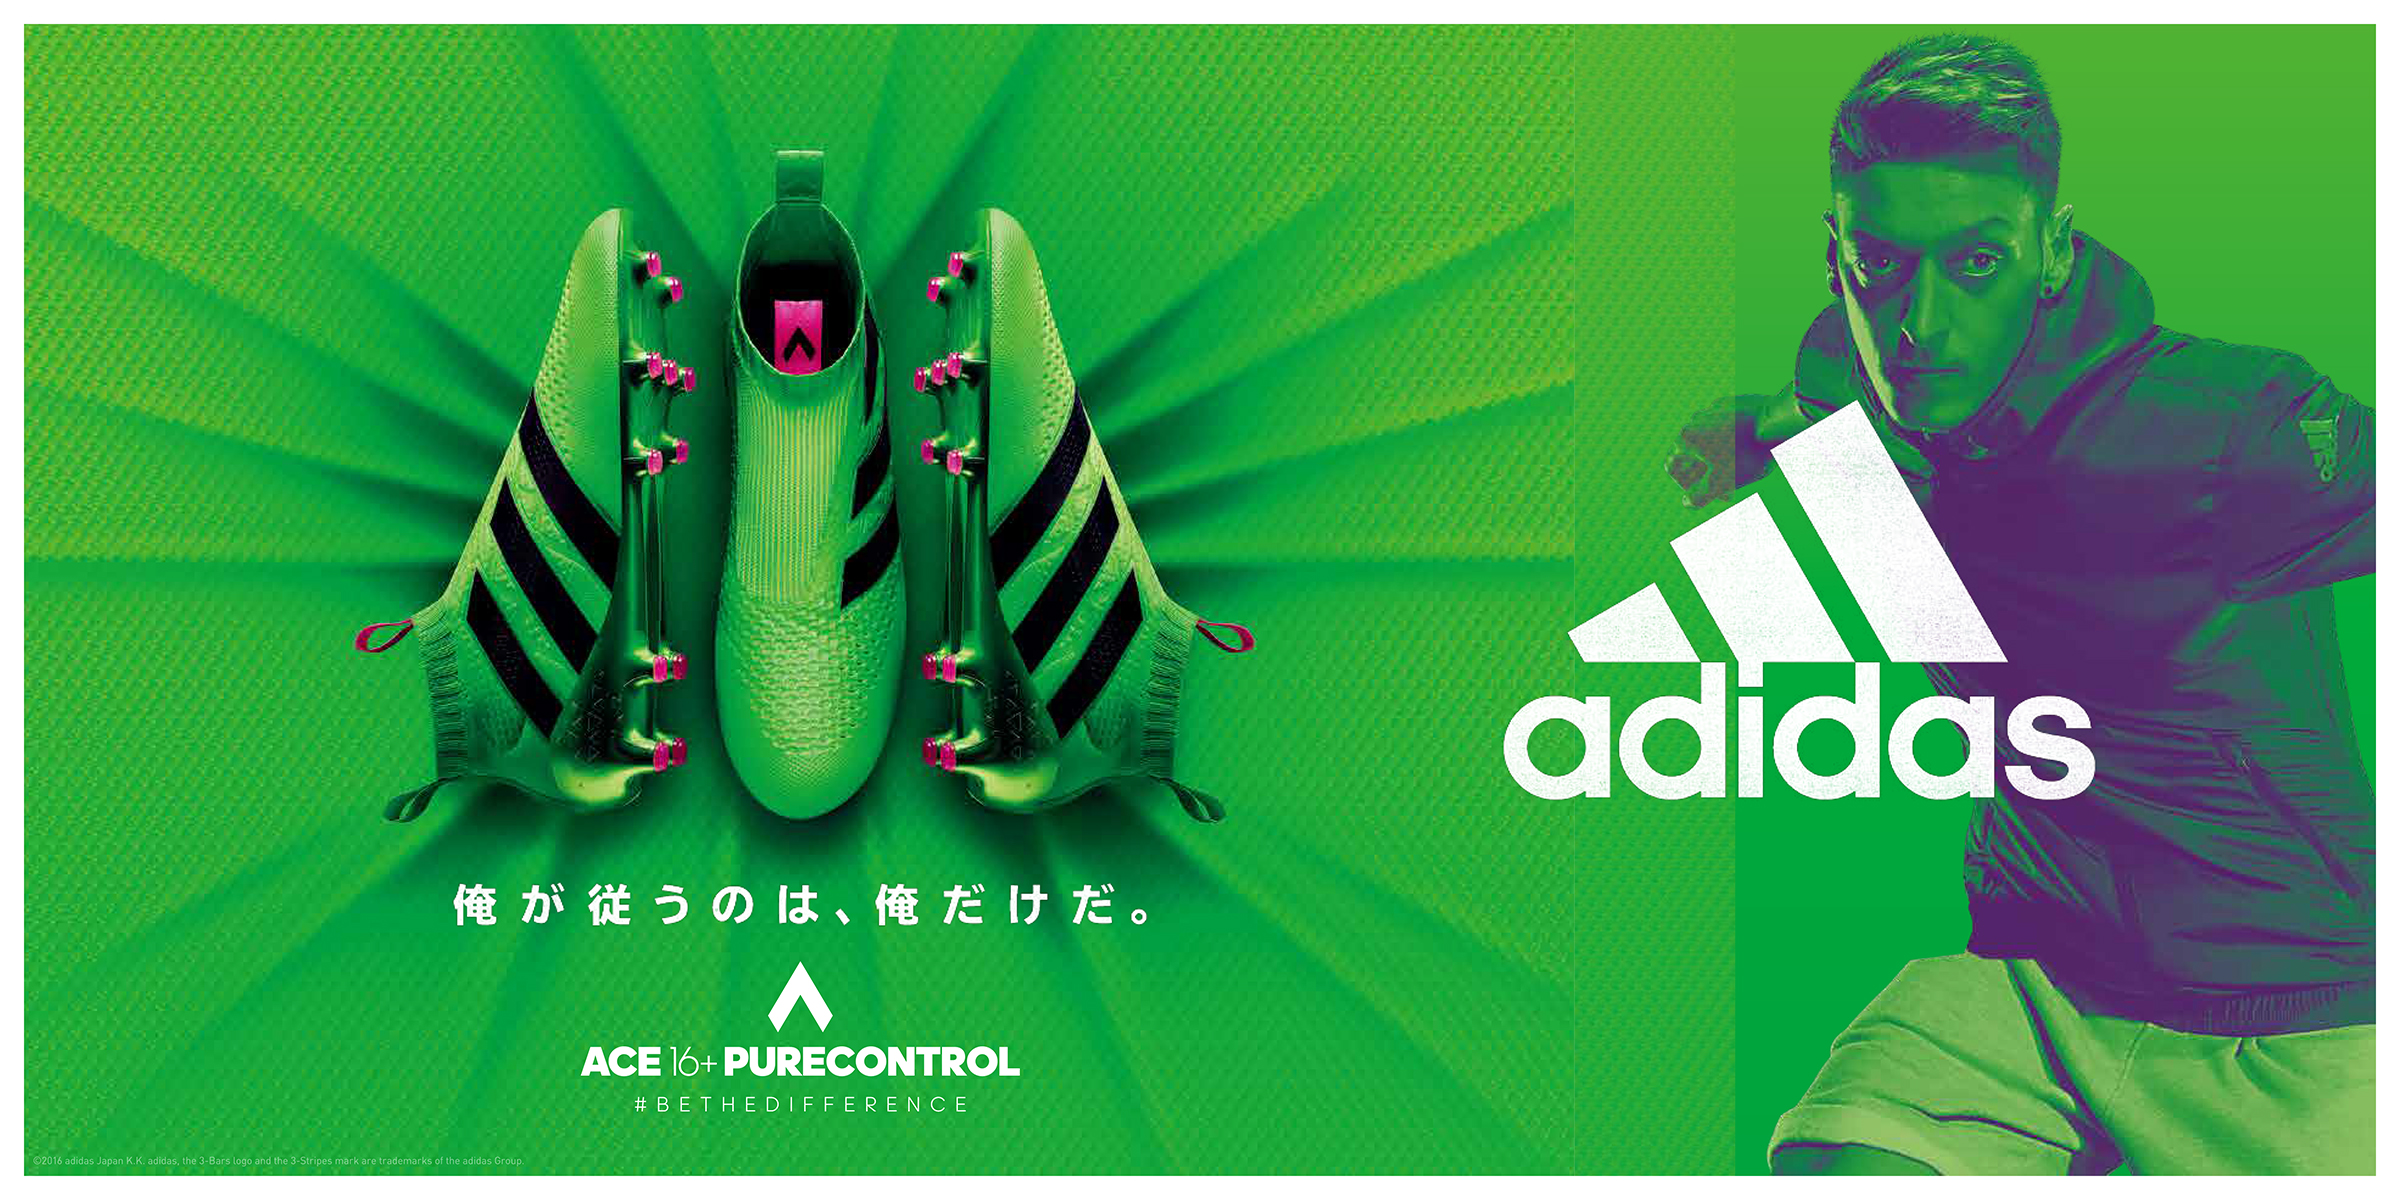 Adidas Product News シューレースのない Laceless 完全一体型スパイク 日本限定1足 予約開始 アディダス ジャパン株式会社のプレスリリース